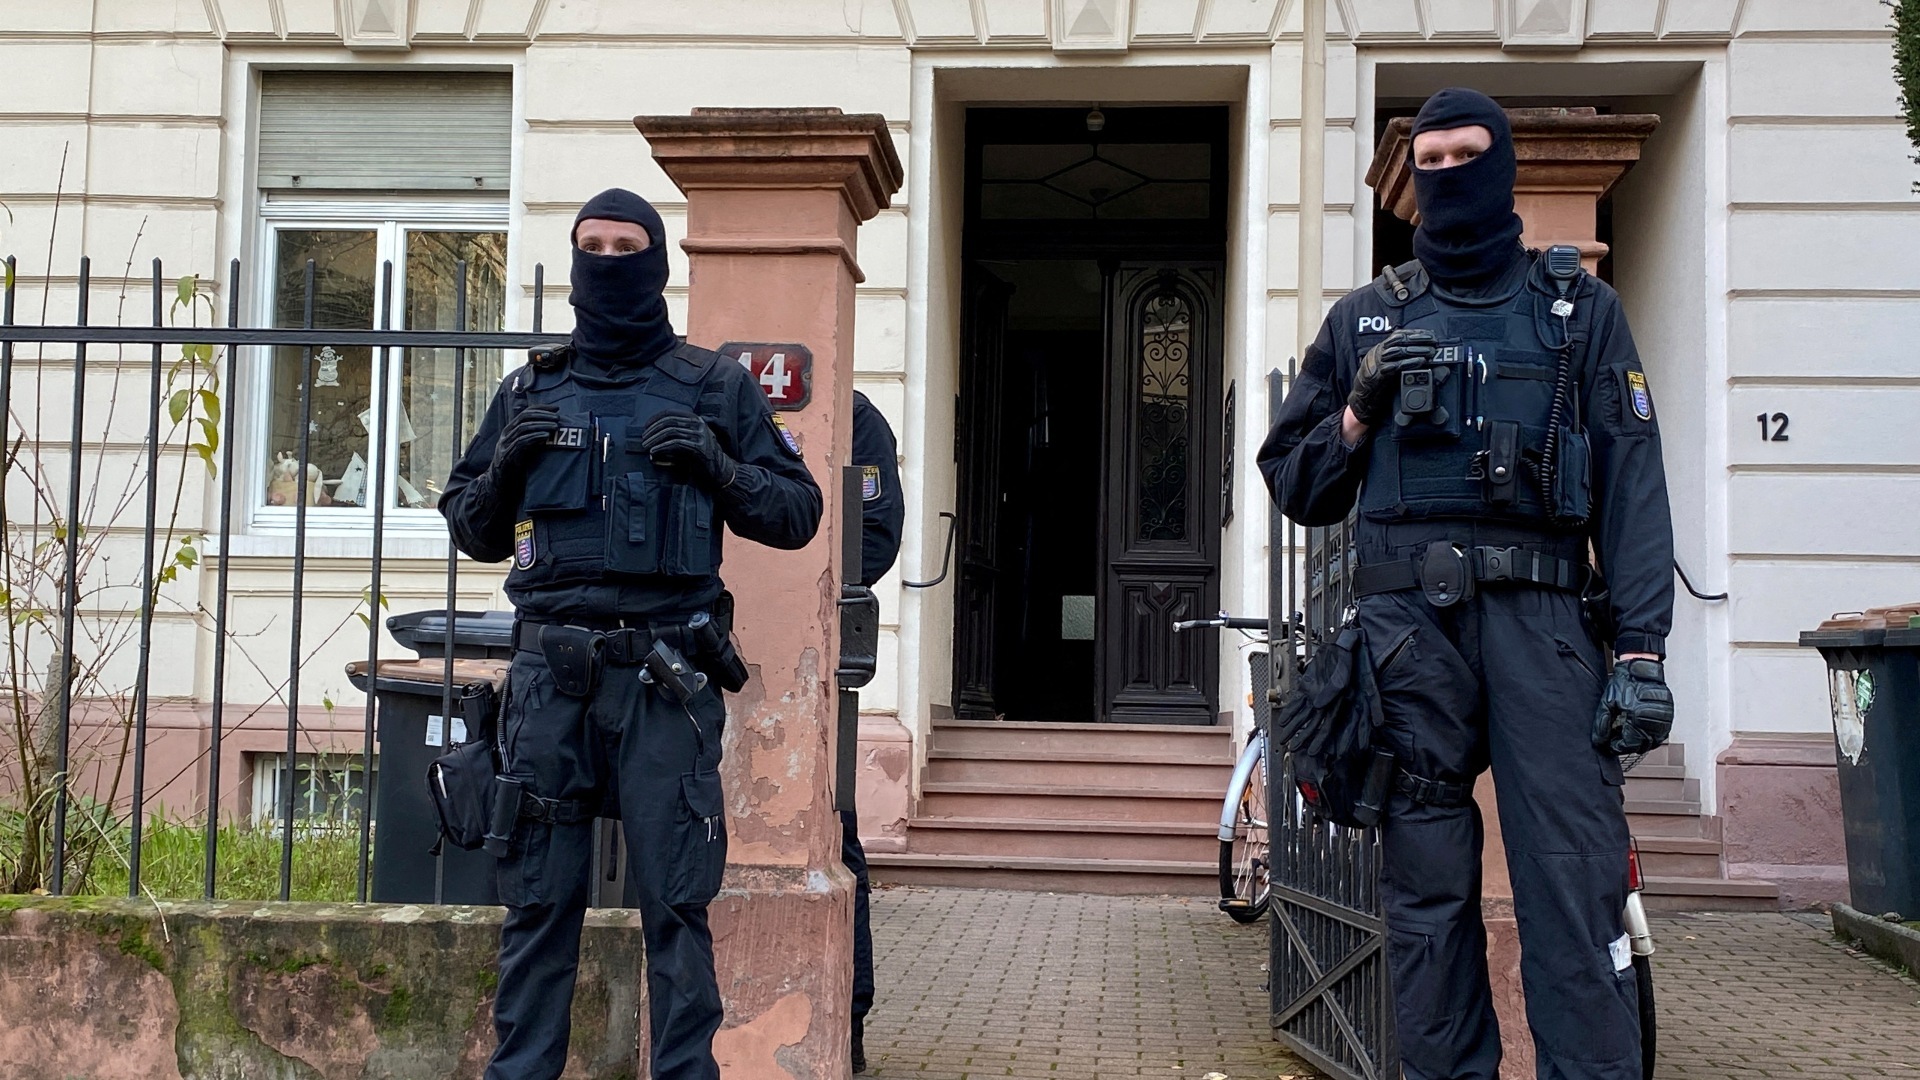 La Germania emette mandati di arresto per complotto golpista